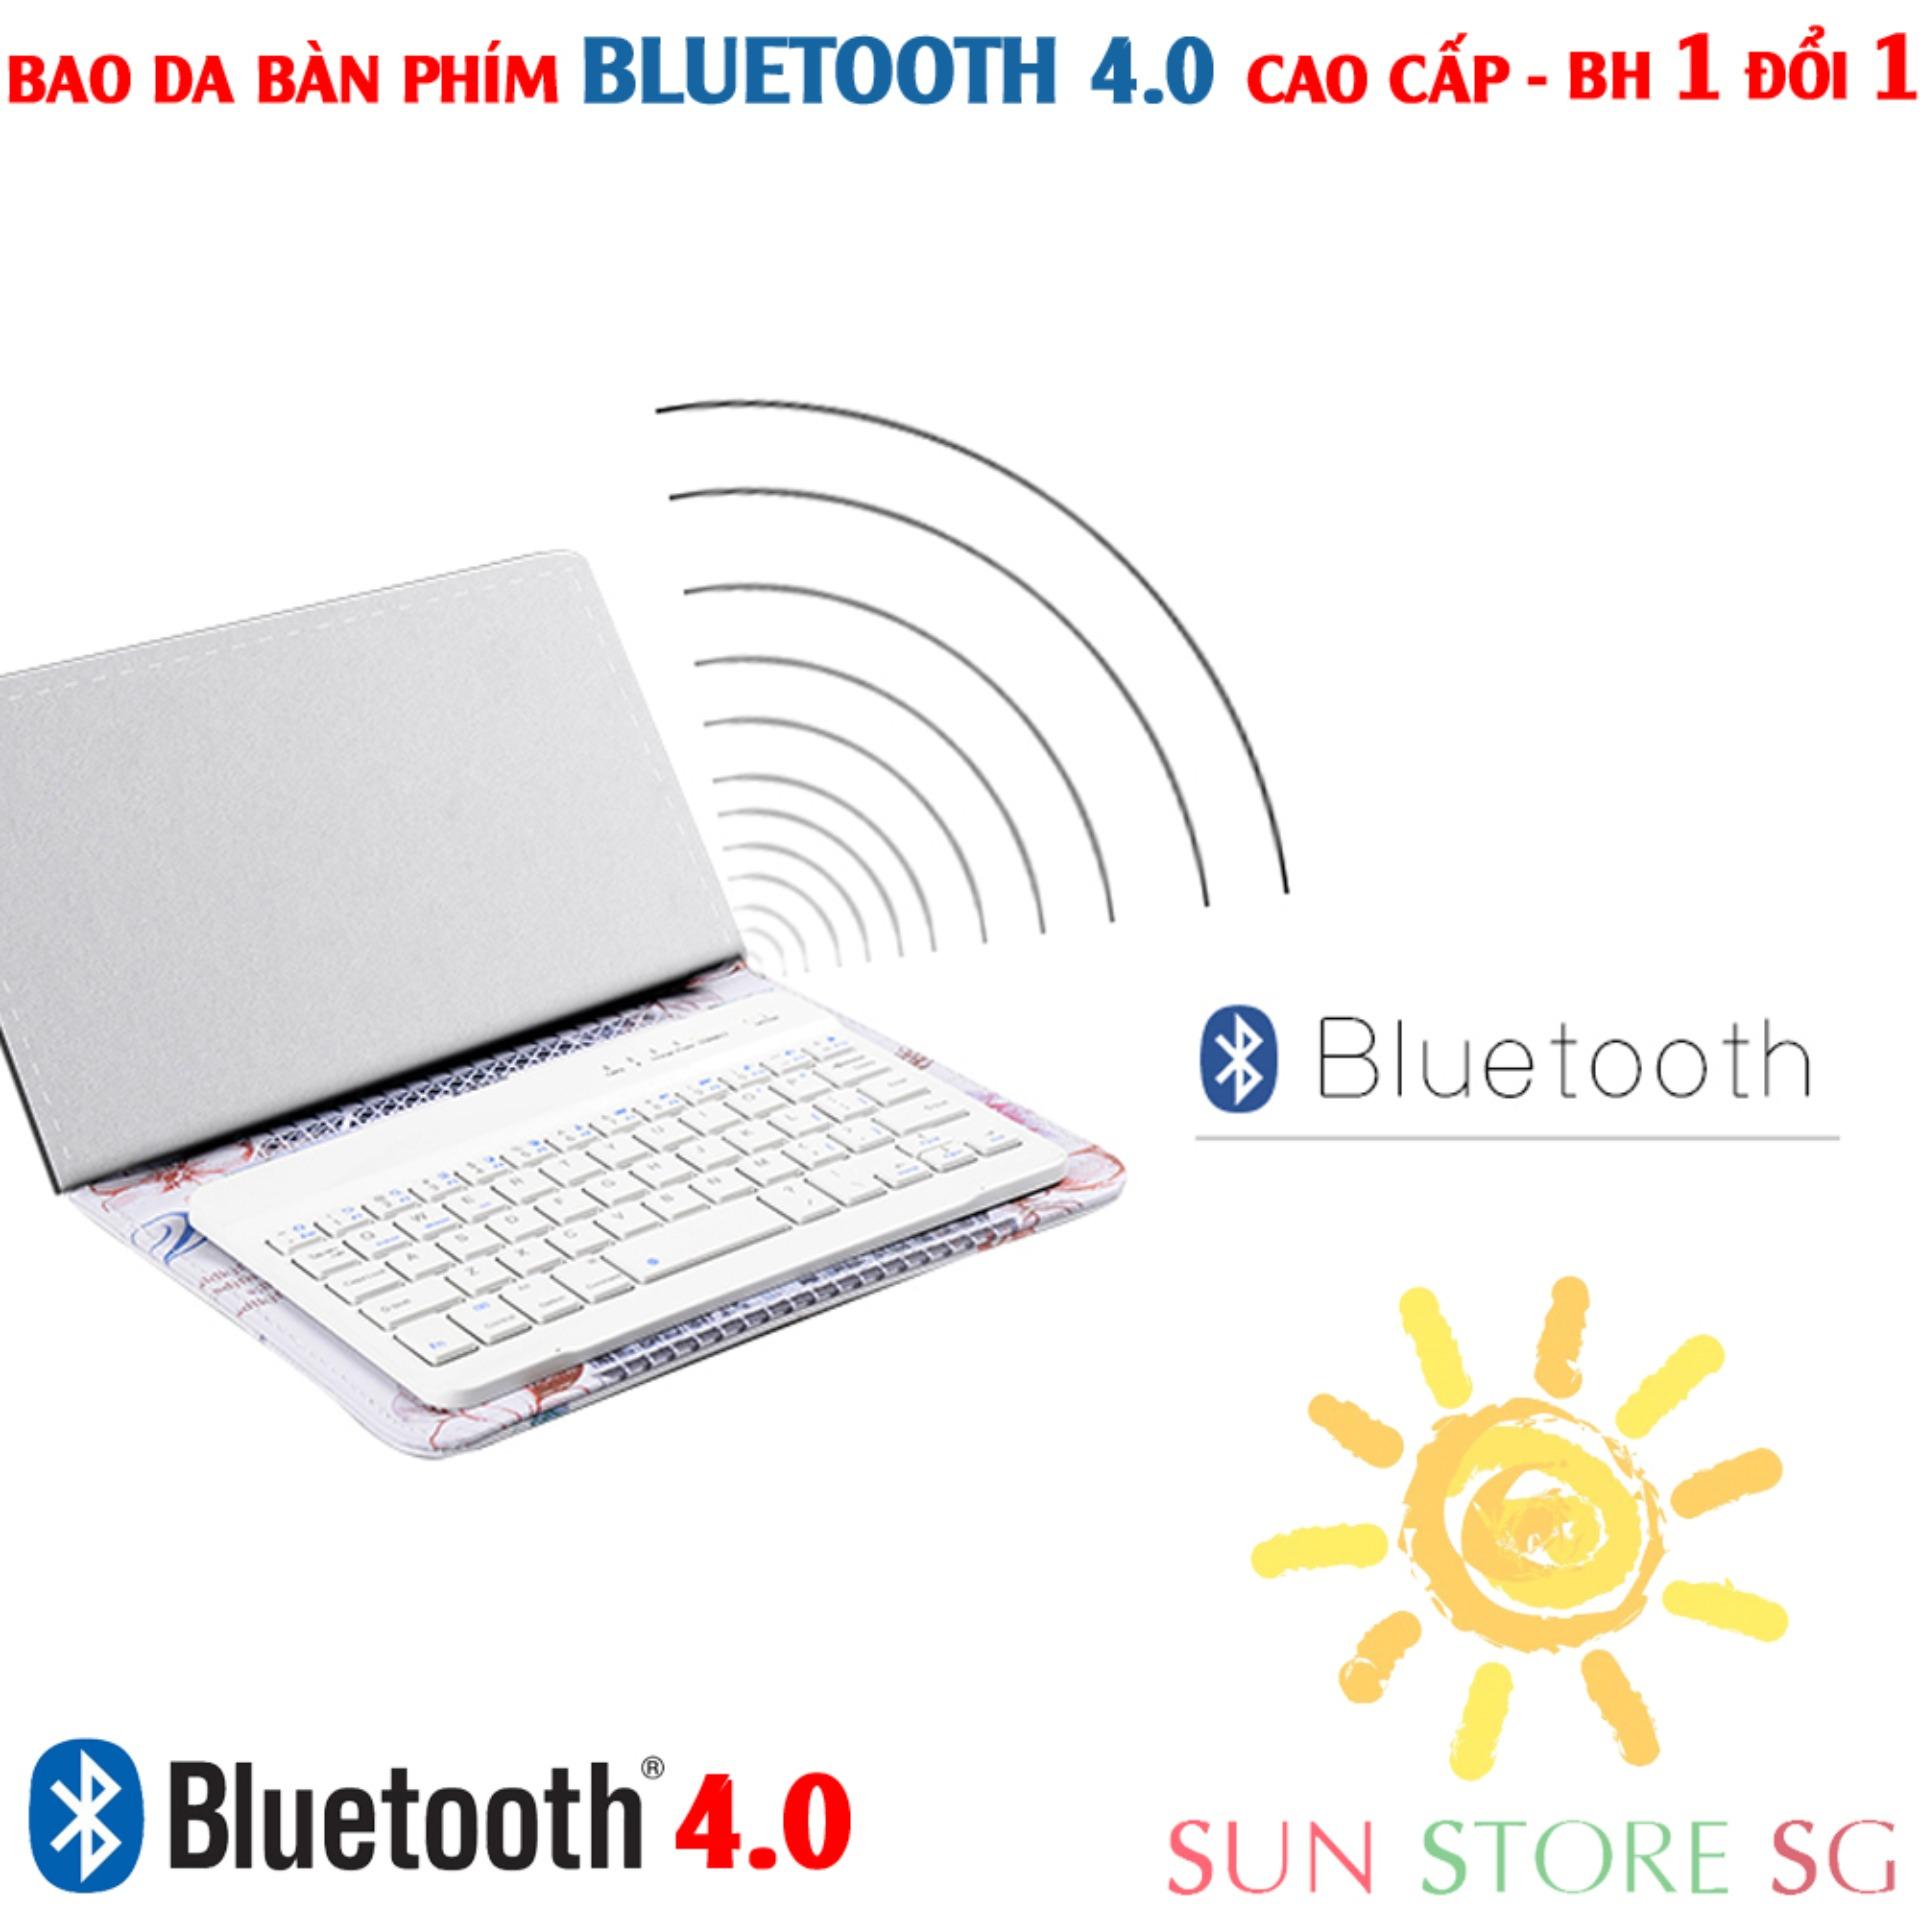 Mua Bàn Phím Bluetooth - Bao Da Kiêm Bàn Phím Bluetooth Hỗ Trợ Các Dòng Điện Thoại Ios, Android, Windows...